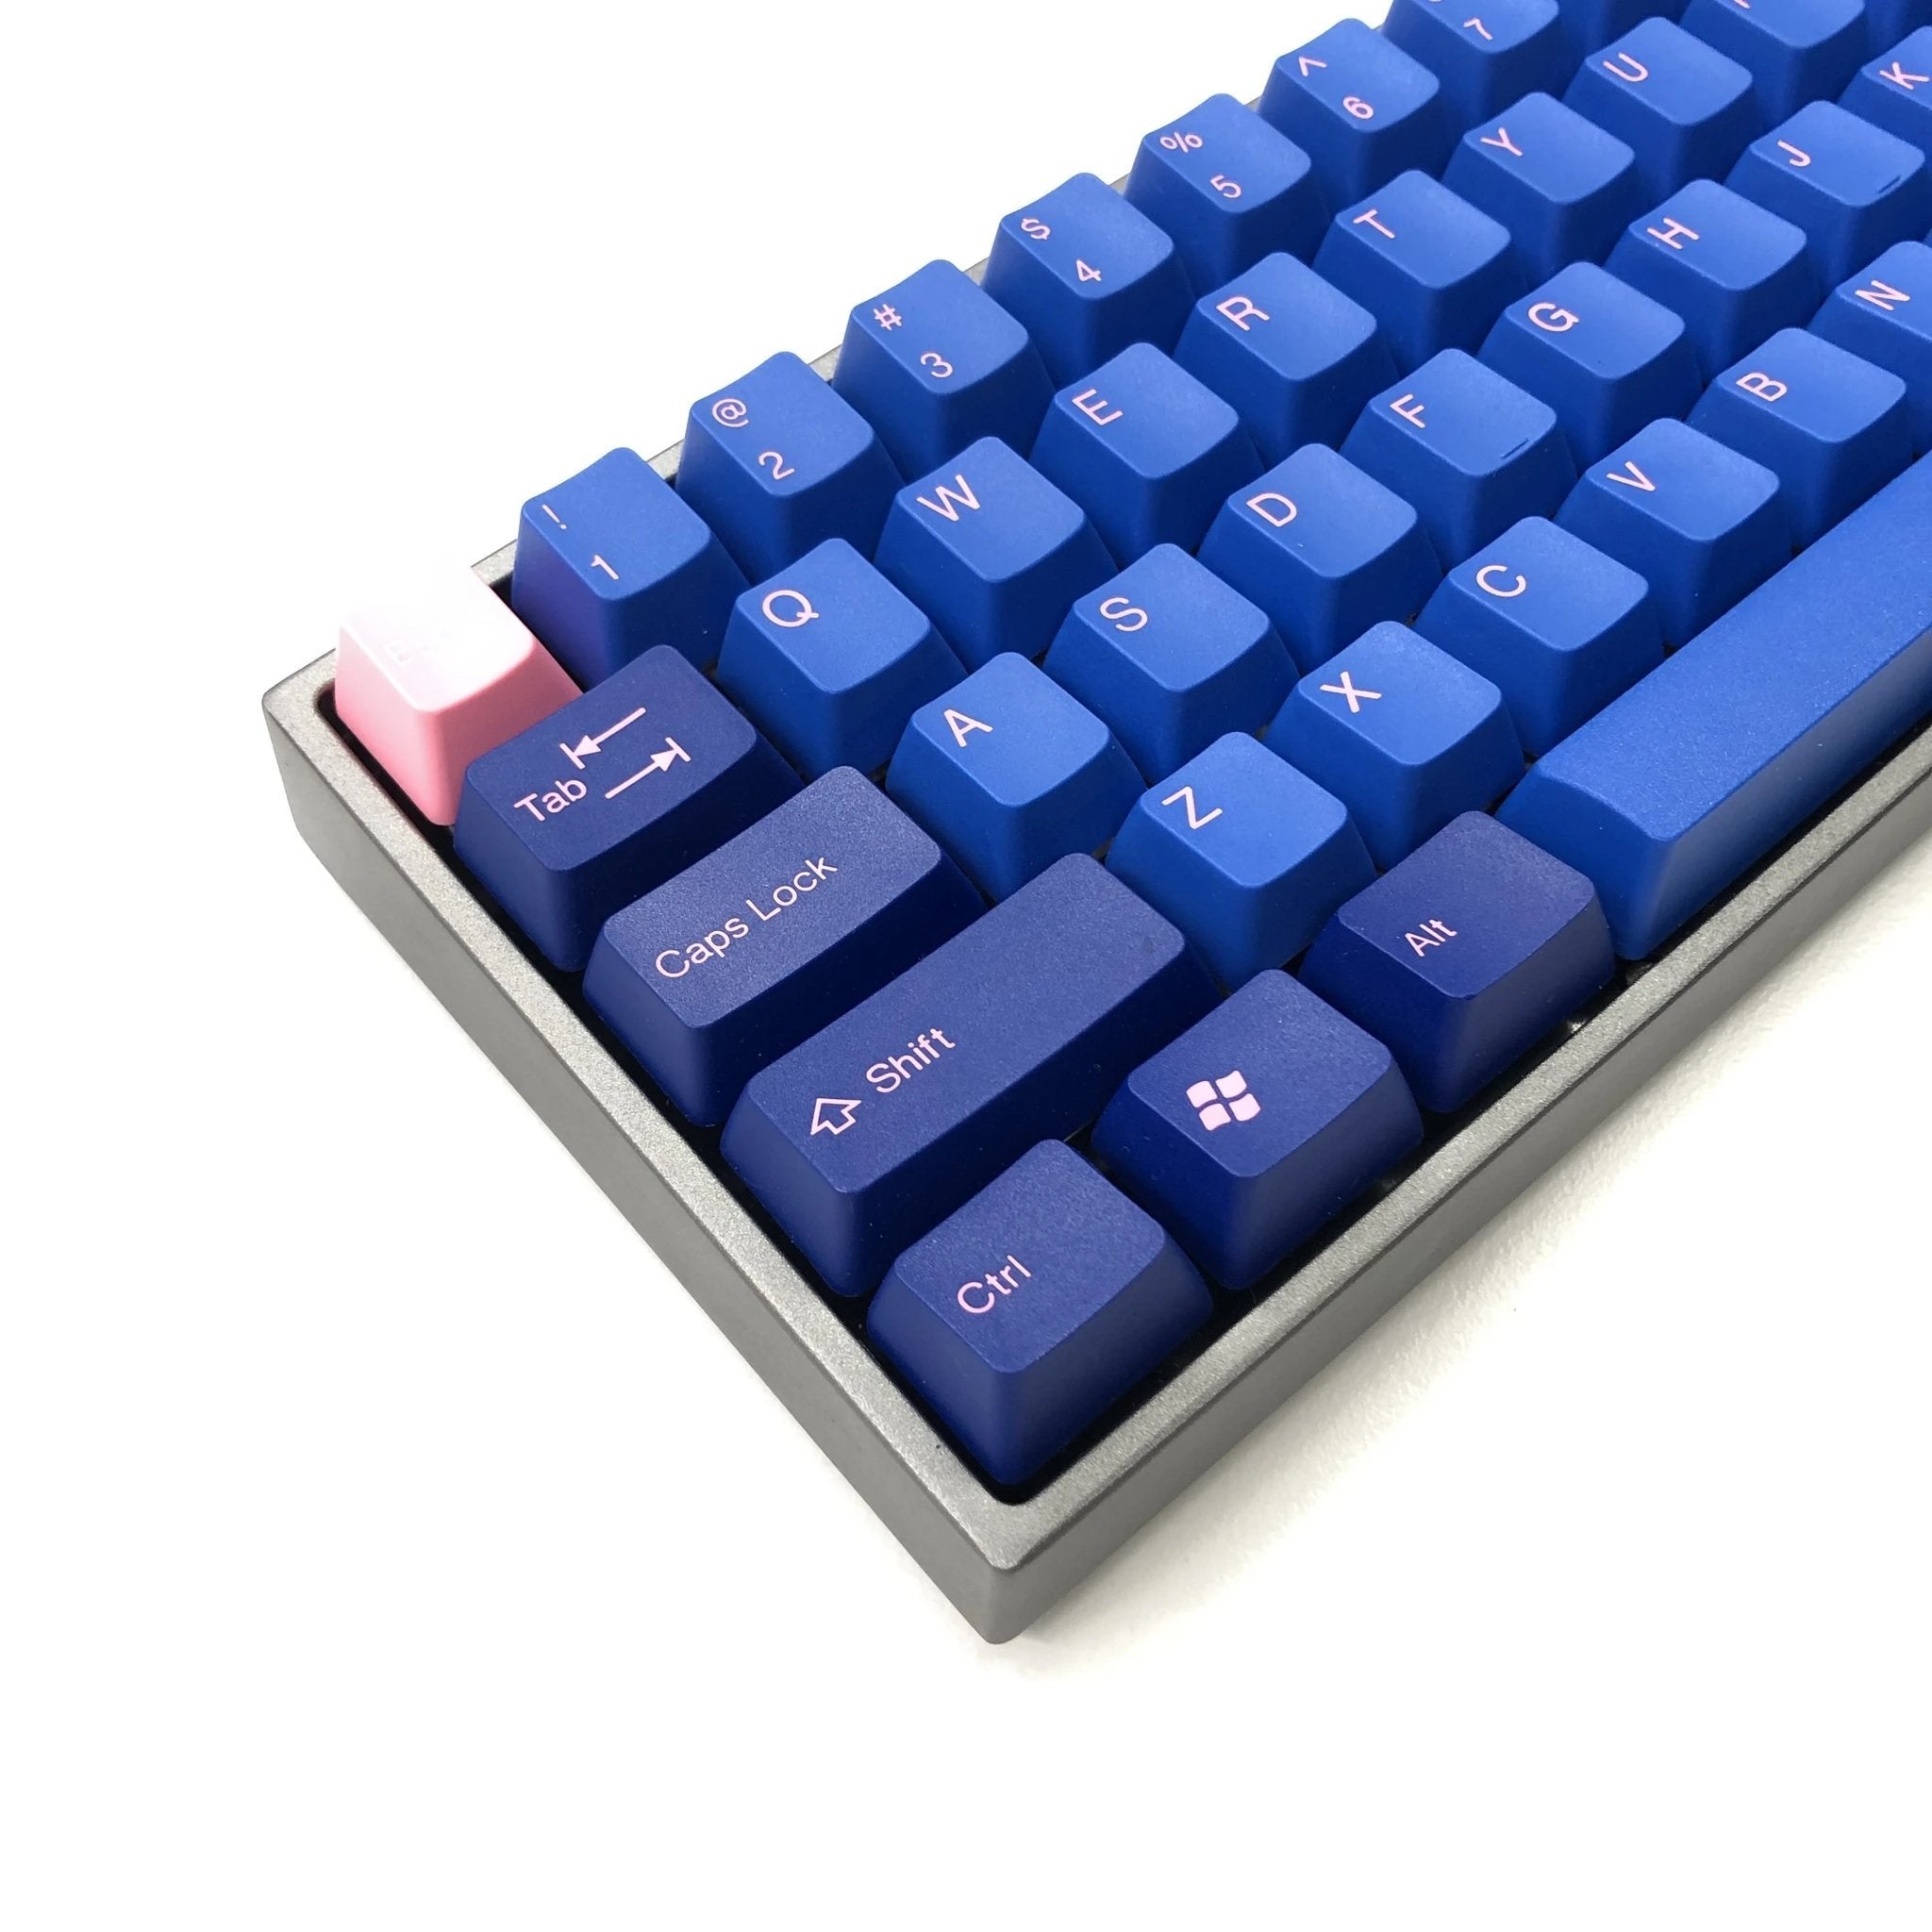 Tai-Hao 104 Keys-Double Shot Keycap + 1 Keys Puller - Pink Letter on Blue Key - Store 974 | ستور ٩٧٤